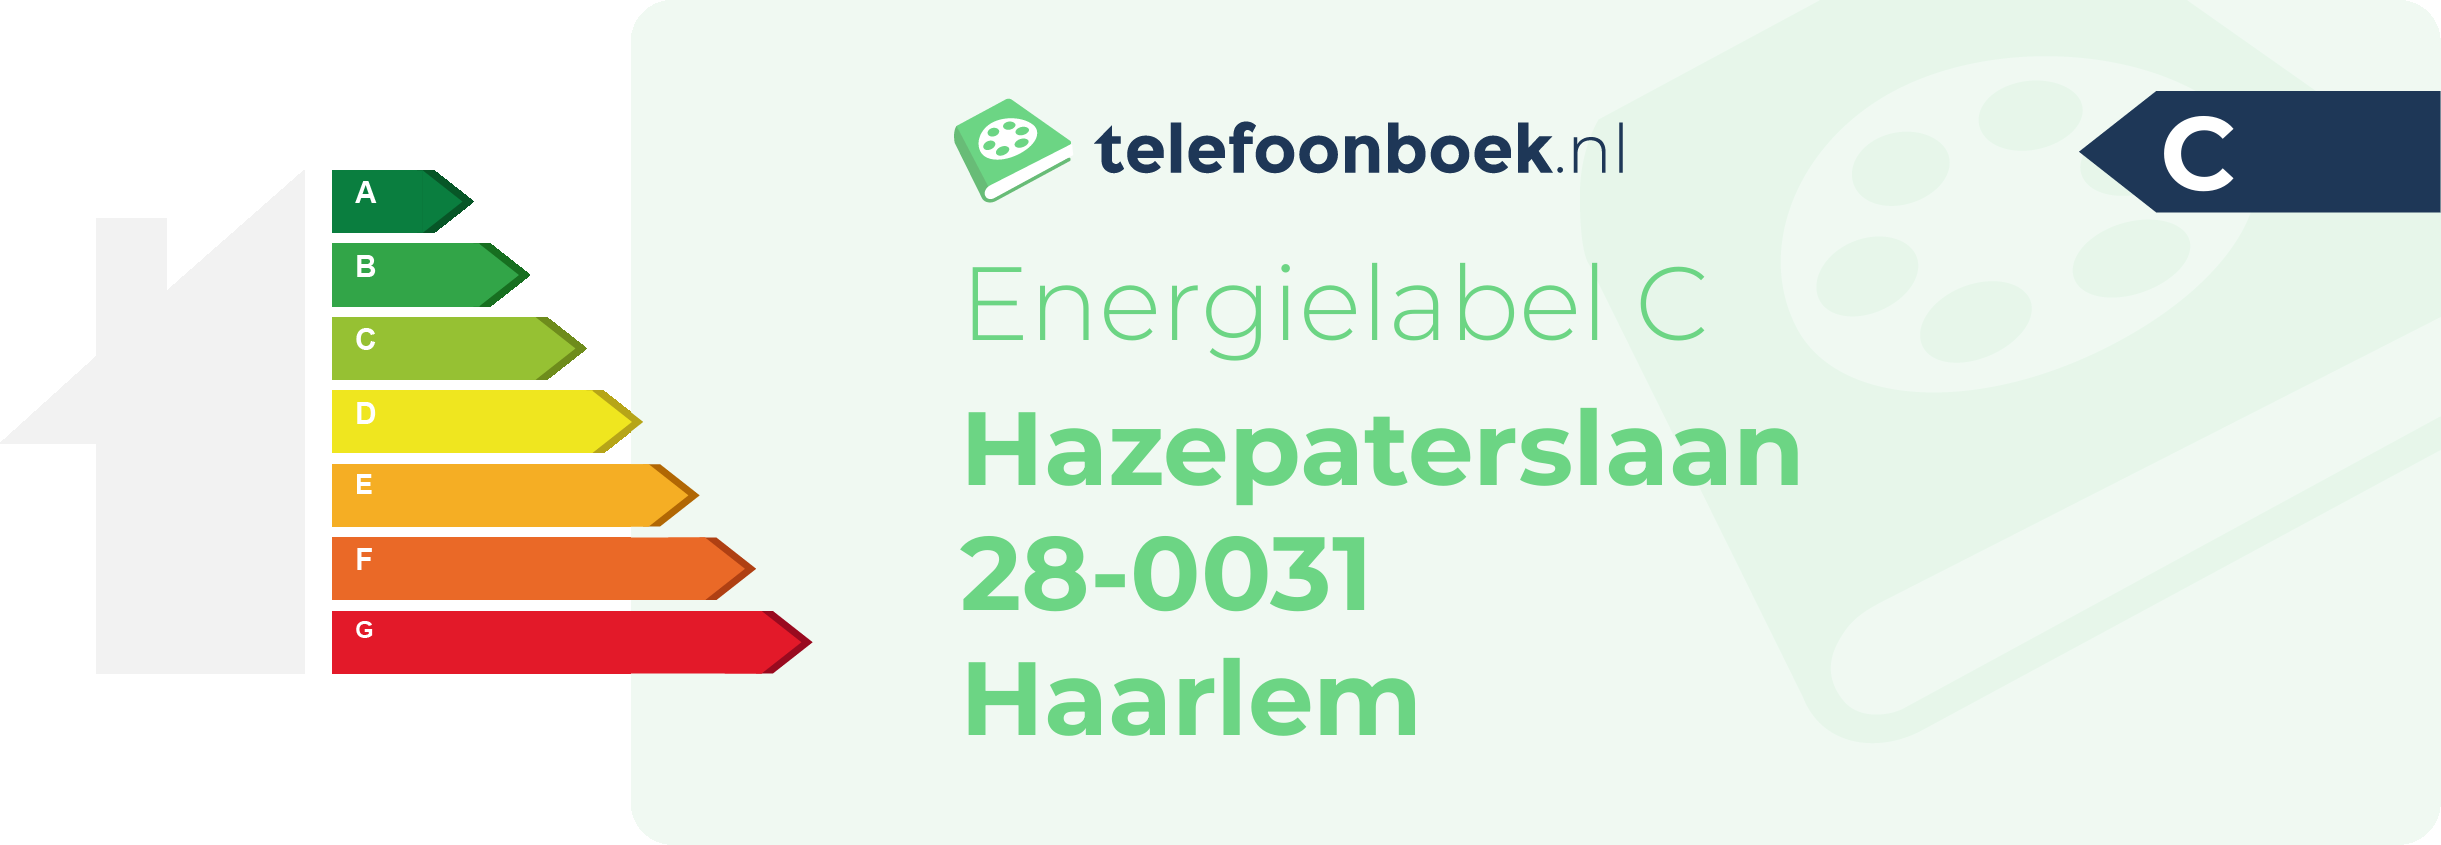 Energielabel Hazepaterslaan 28-0031 Haarlem